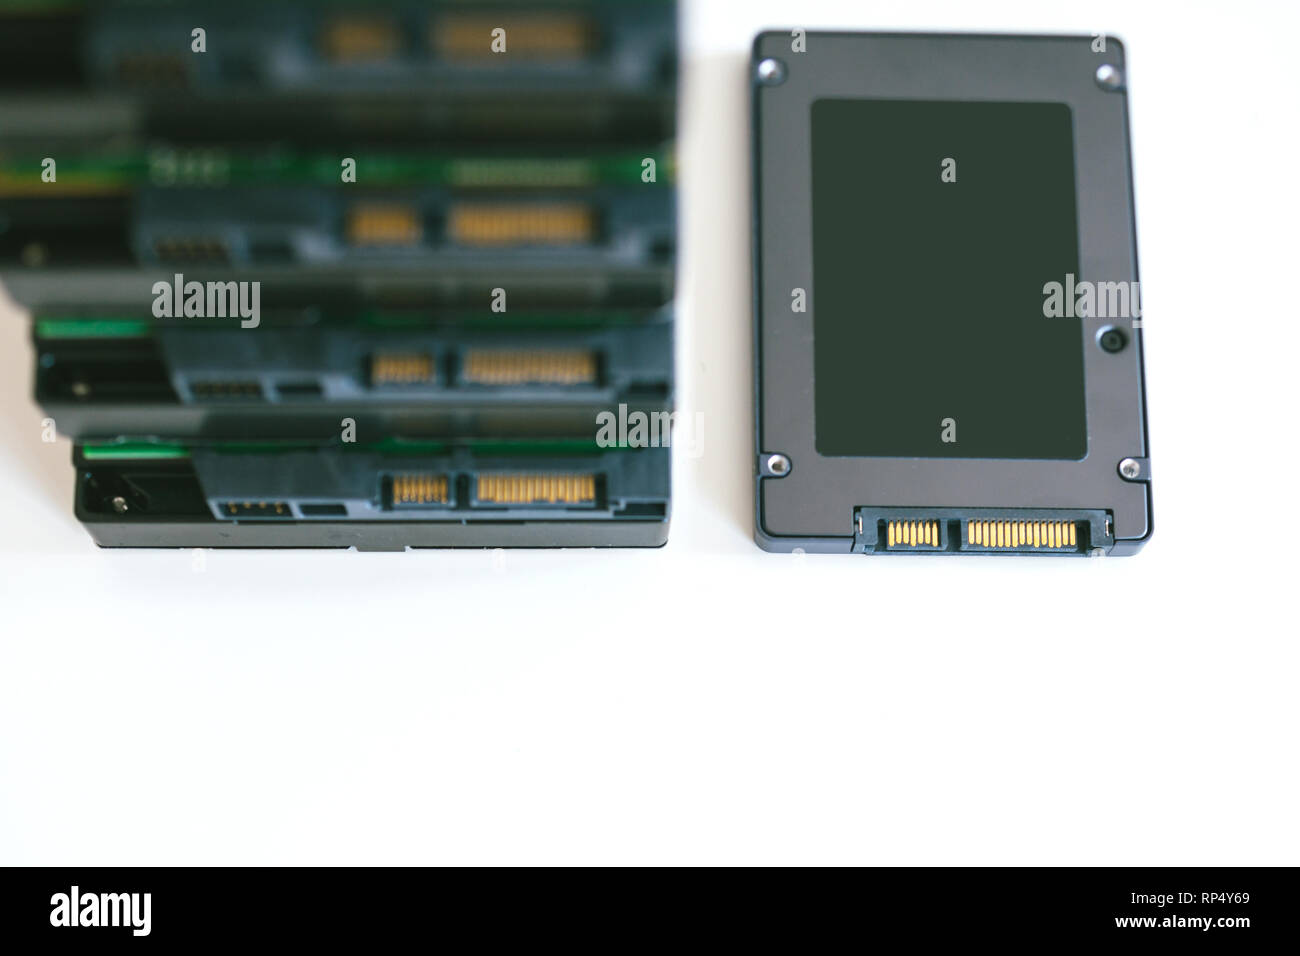 Stapel mehrere HDD Festplatten mit modernen schnelle SSD Solid State Drive  in der Nähe von Ihnen platziert Stockfotografie - Alamy